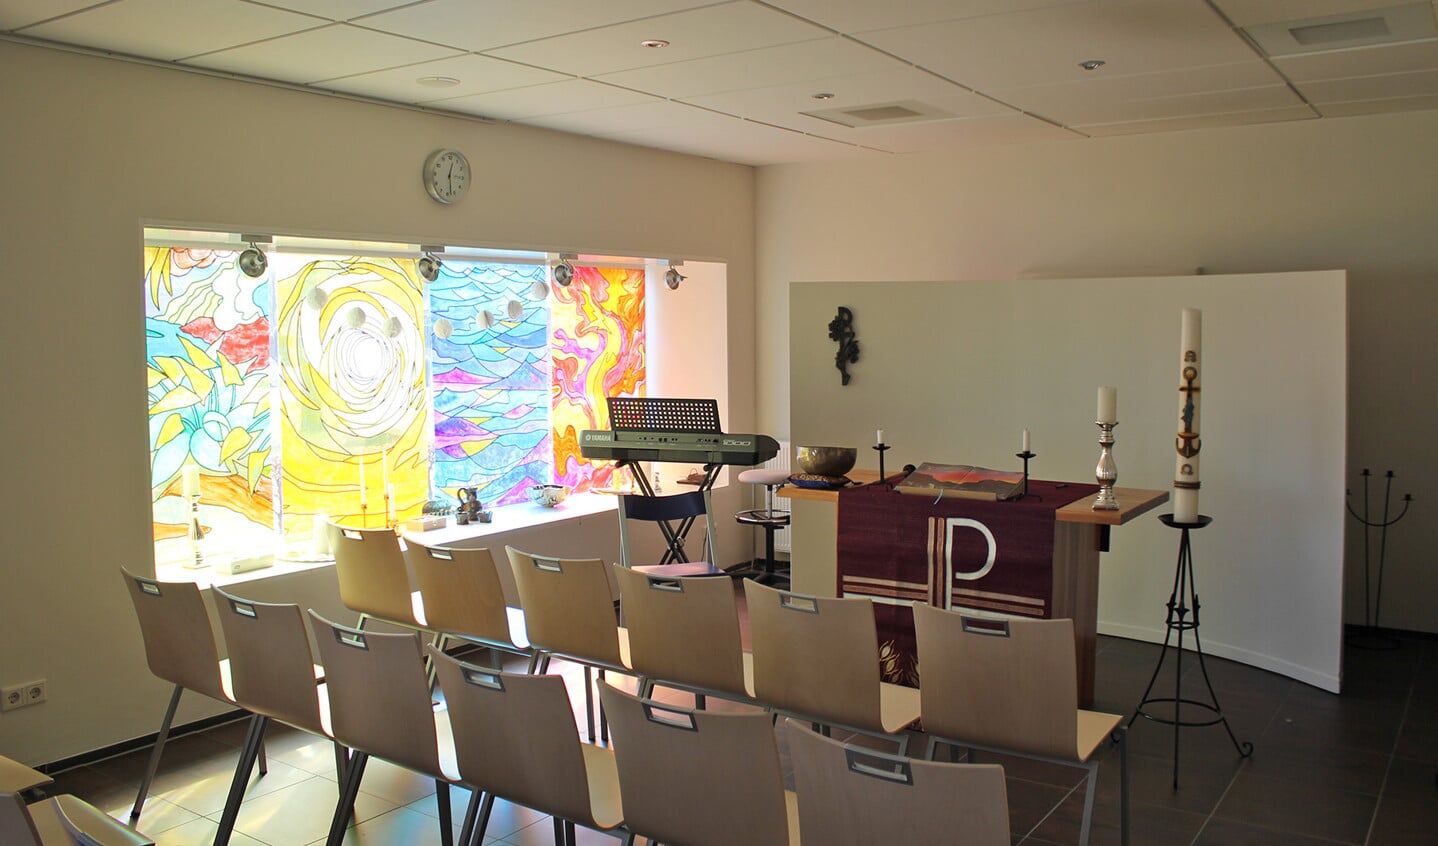 De religieuze ruimte in de tbs-kliniek in Boschoord waar geregeld een kerkdienst wordt gehouden.